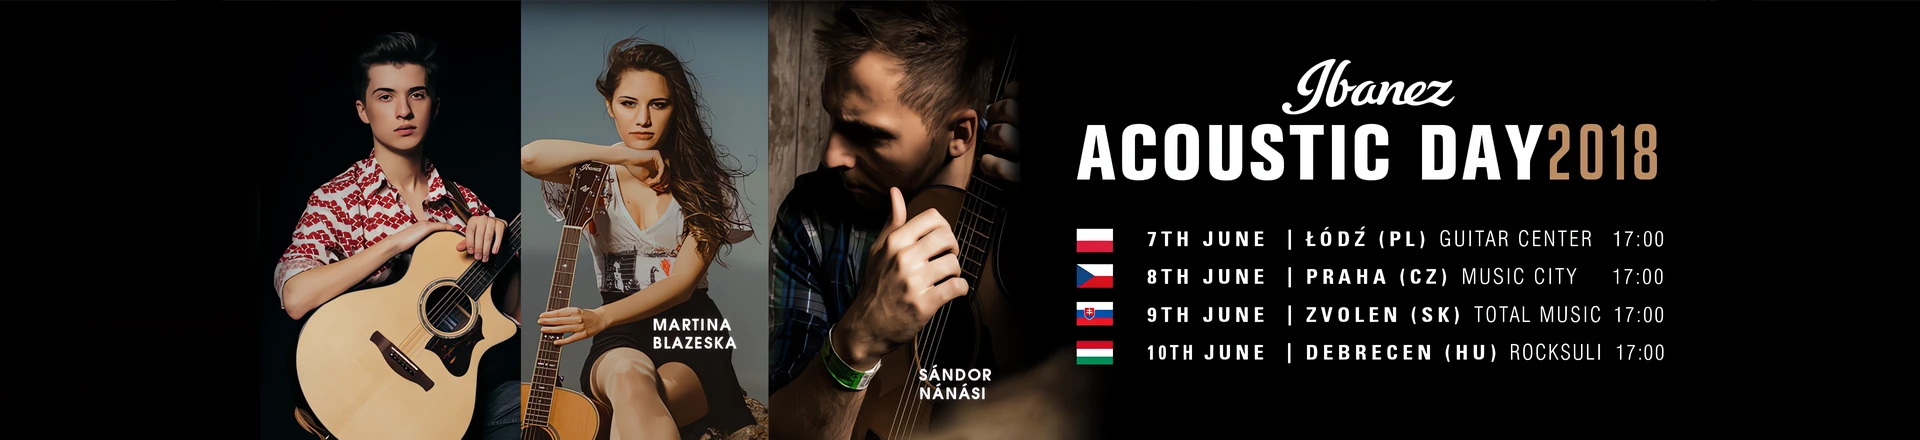 Ibanez Acoustic Day już 7 czerwca w Łodzi